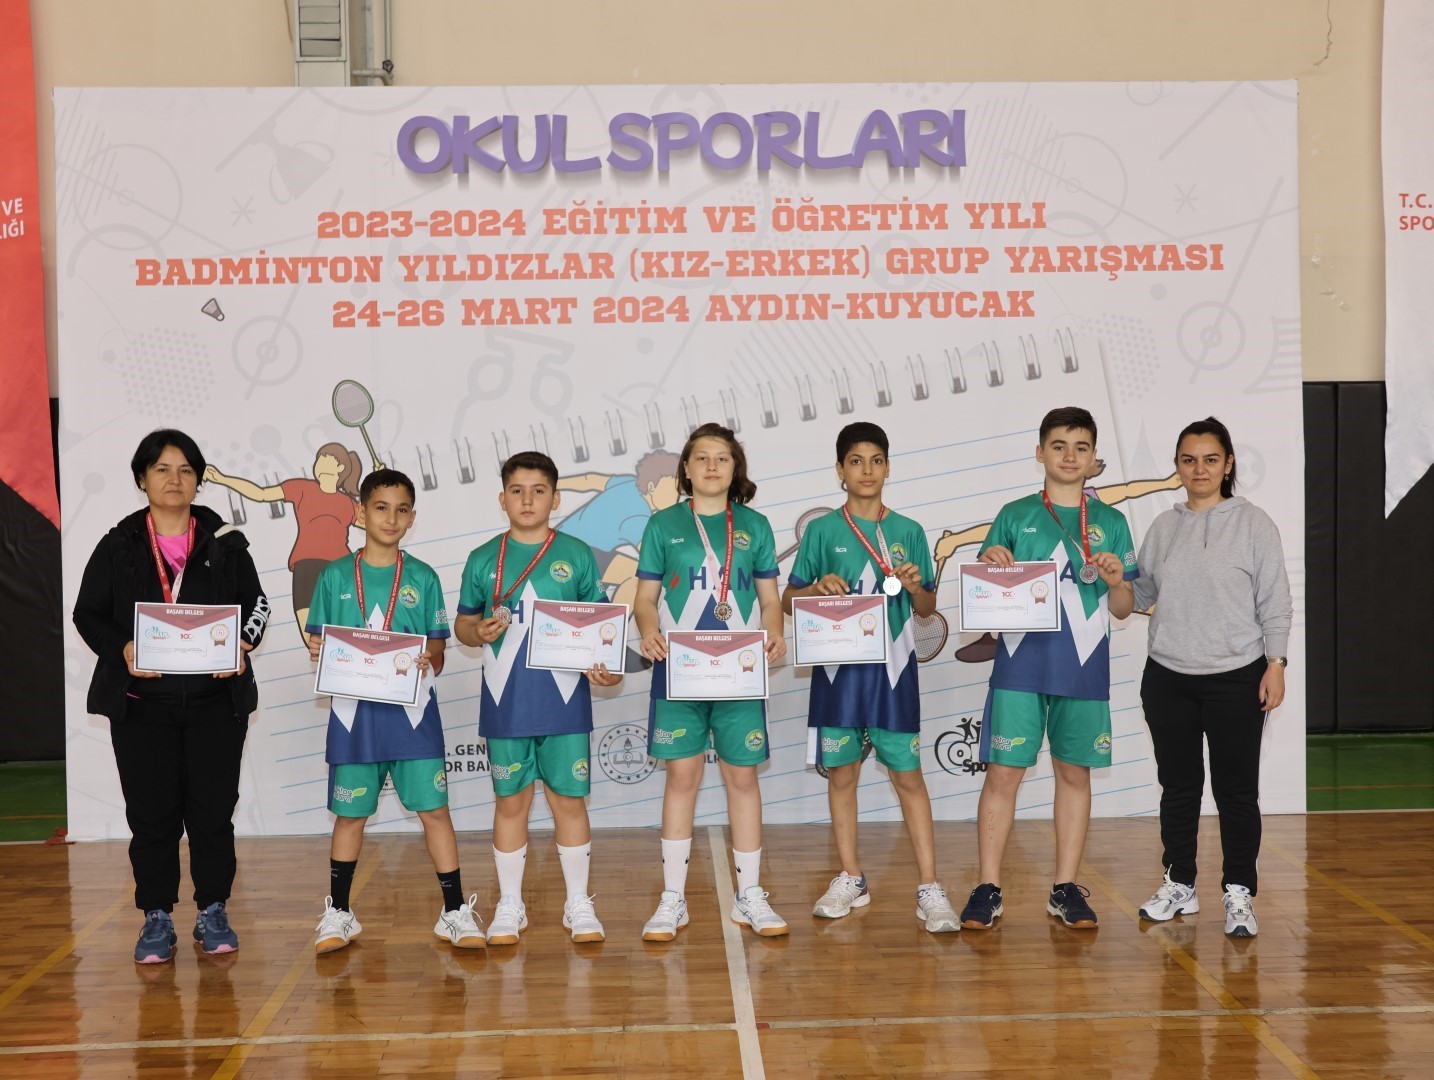 Genç yeteneklerin badminton mücadelesi tamamlandı
